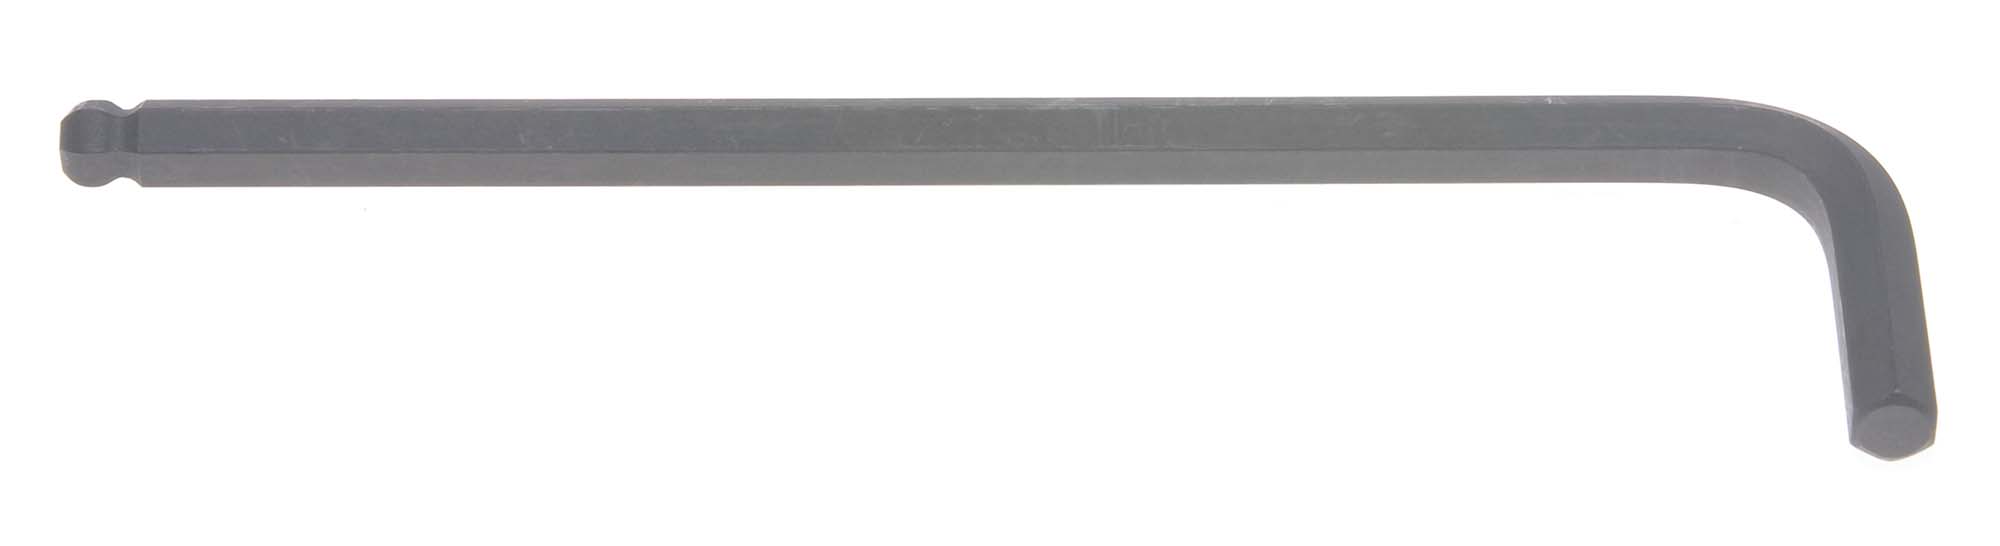 Bondhus 10966 5.5mm Balldriver L-Wrench Hex Key